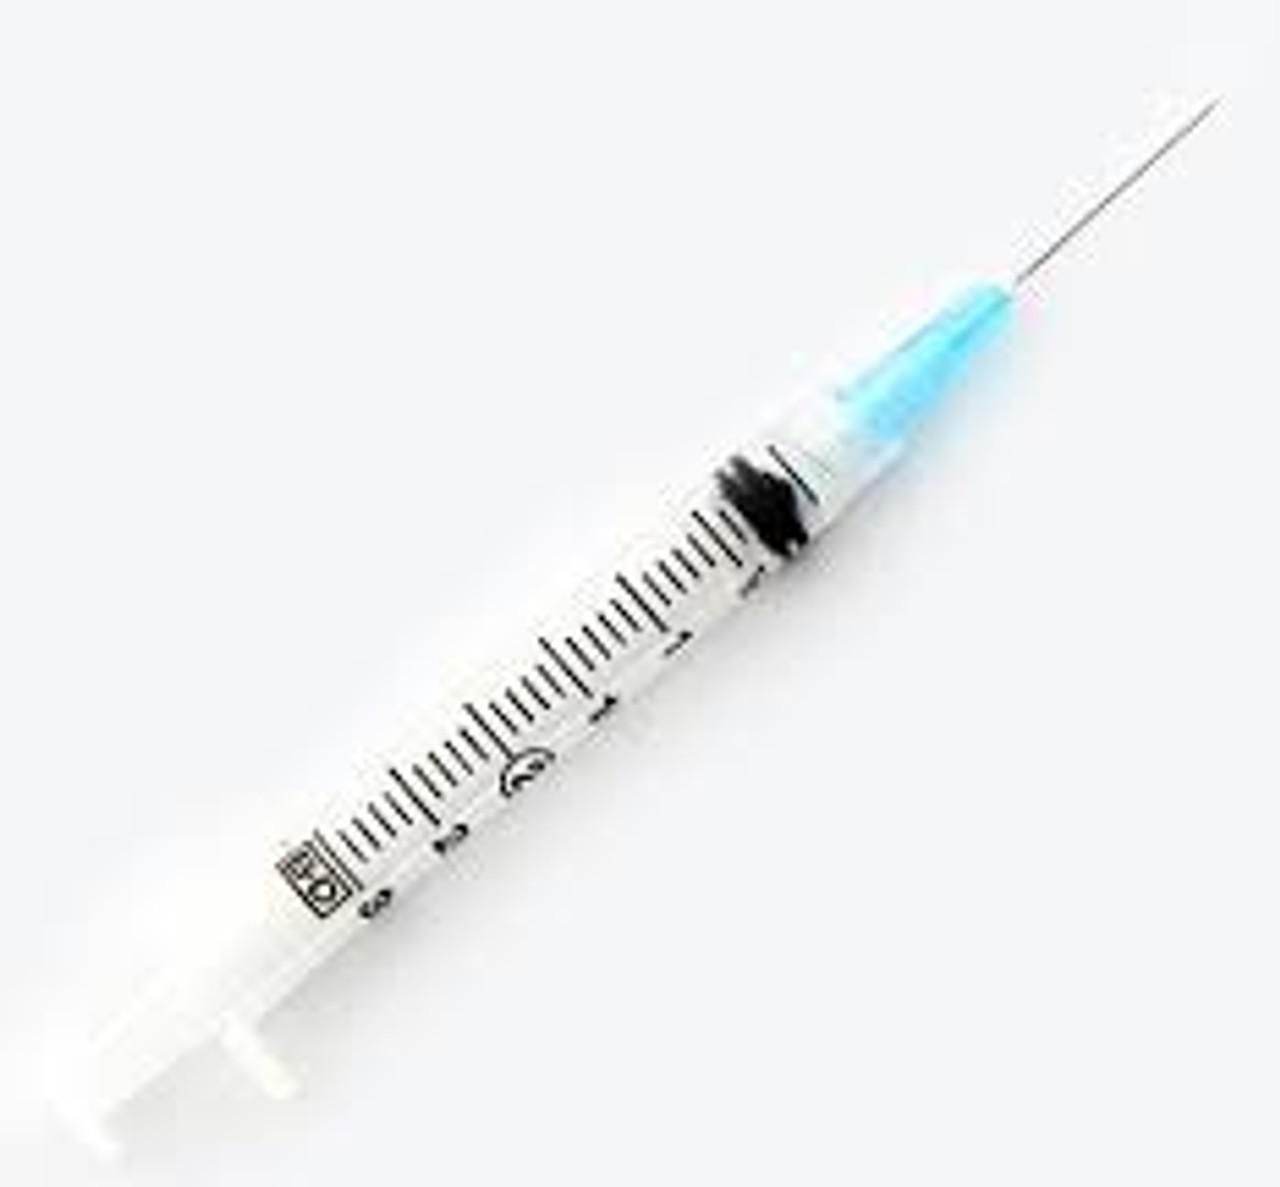 Terumo 3mL Luer Lock Syringe with 25g x 1in. Needle, 100/box